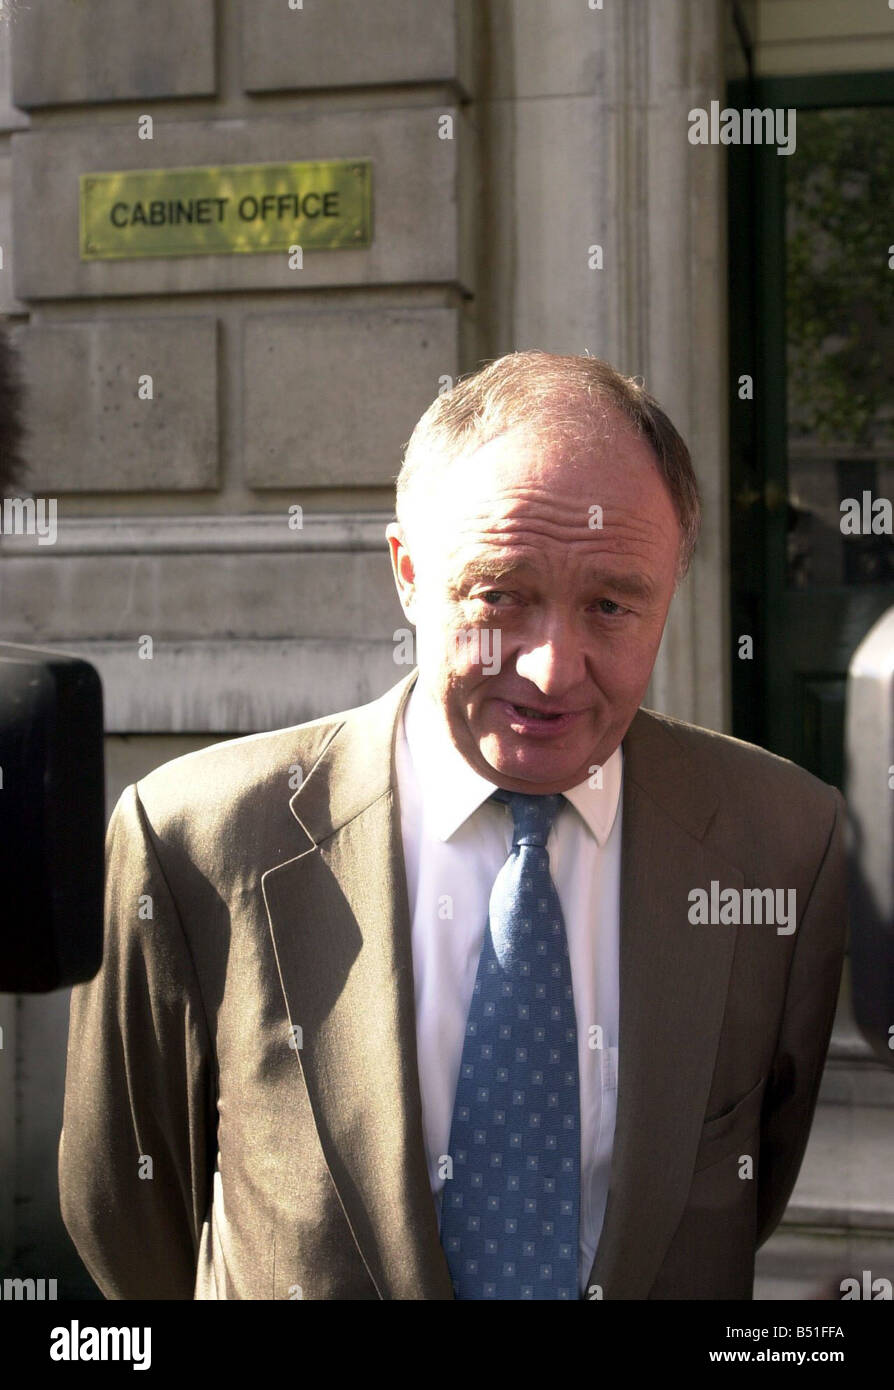 Ken Sie Livingstone Londoner Bürgermeister Okt 2001 und Nick Raynsford im Bild außerhalb des Cabinet Office nach Teilnahme an einer Sitzung, um die Bedrohung durch einen biologischen Angriff auf London zu besprechen Stockfoto